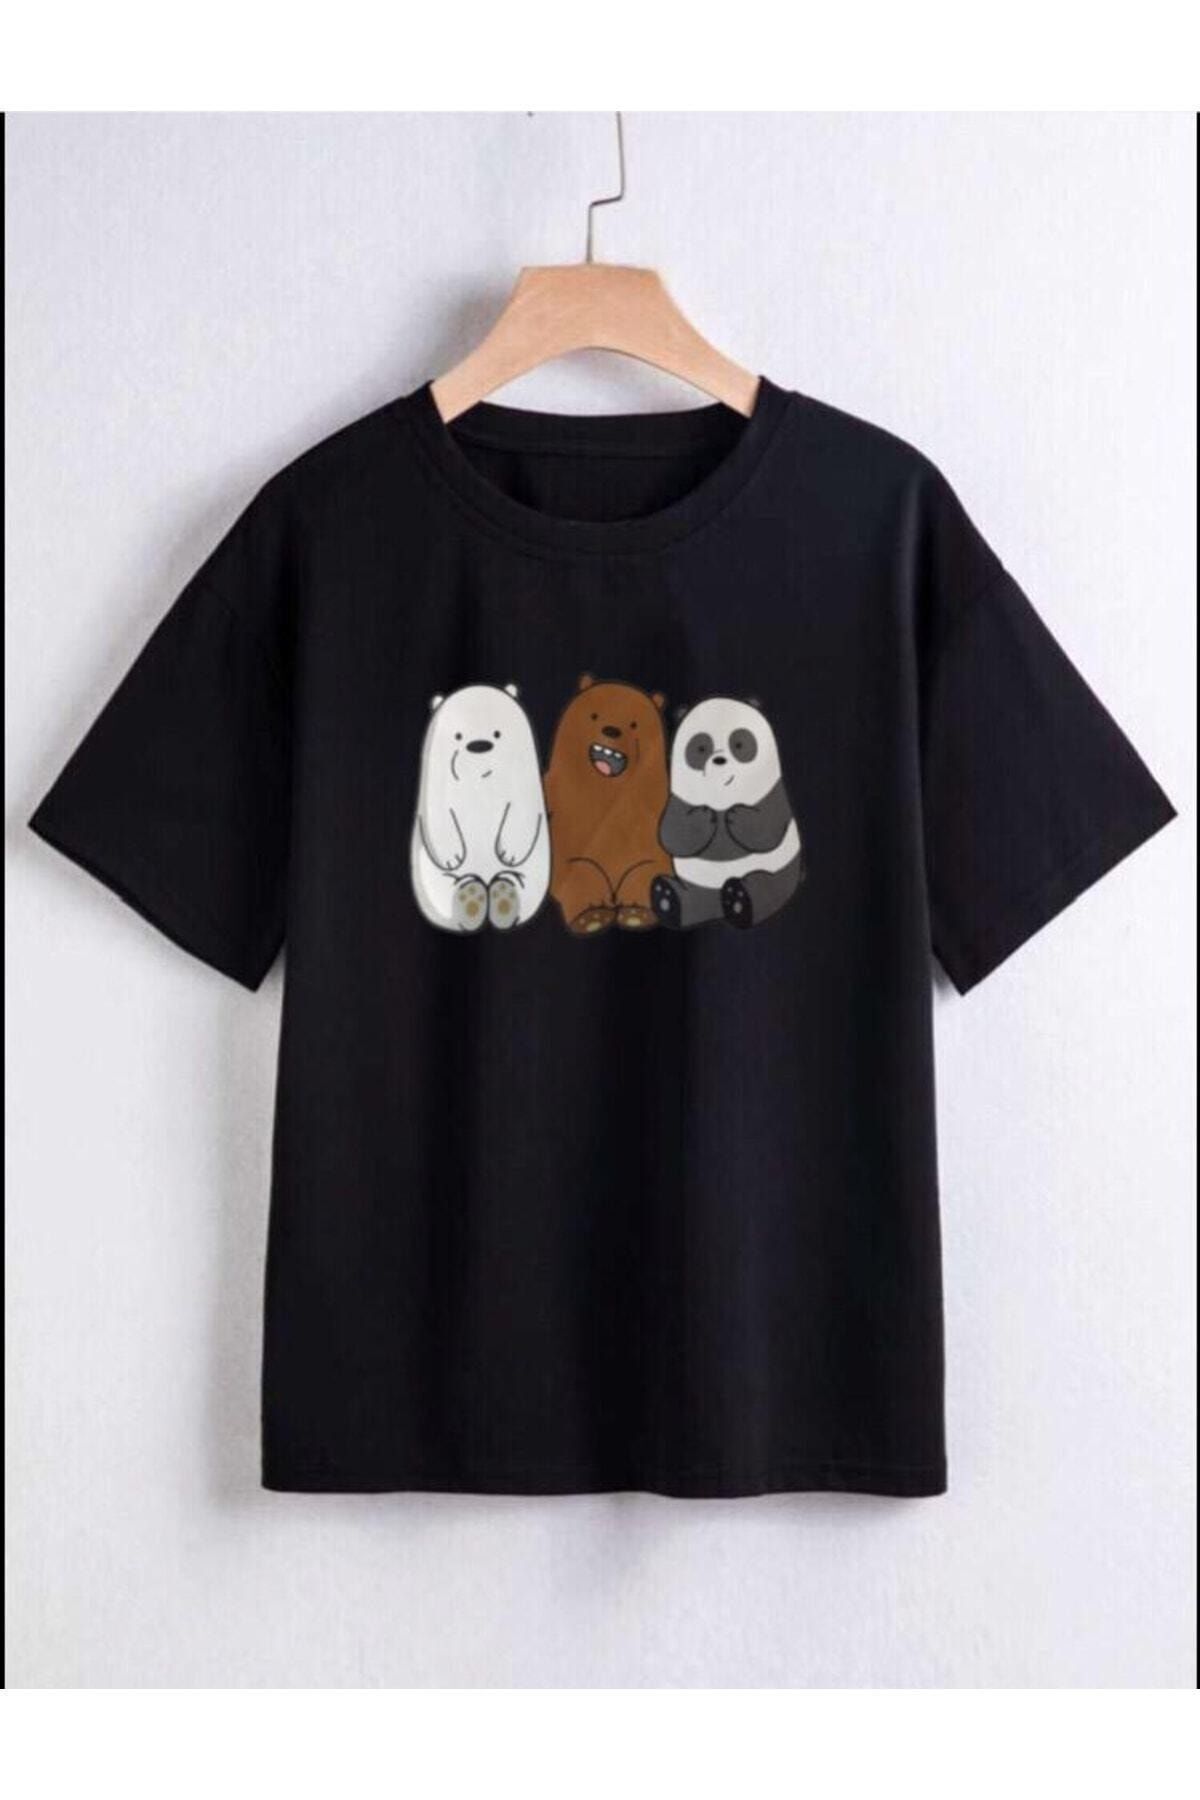 REMESA Pandalar Baskılı Kız/erkek Çocuk Tişört